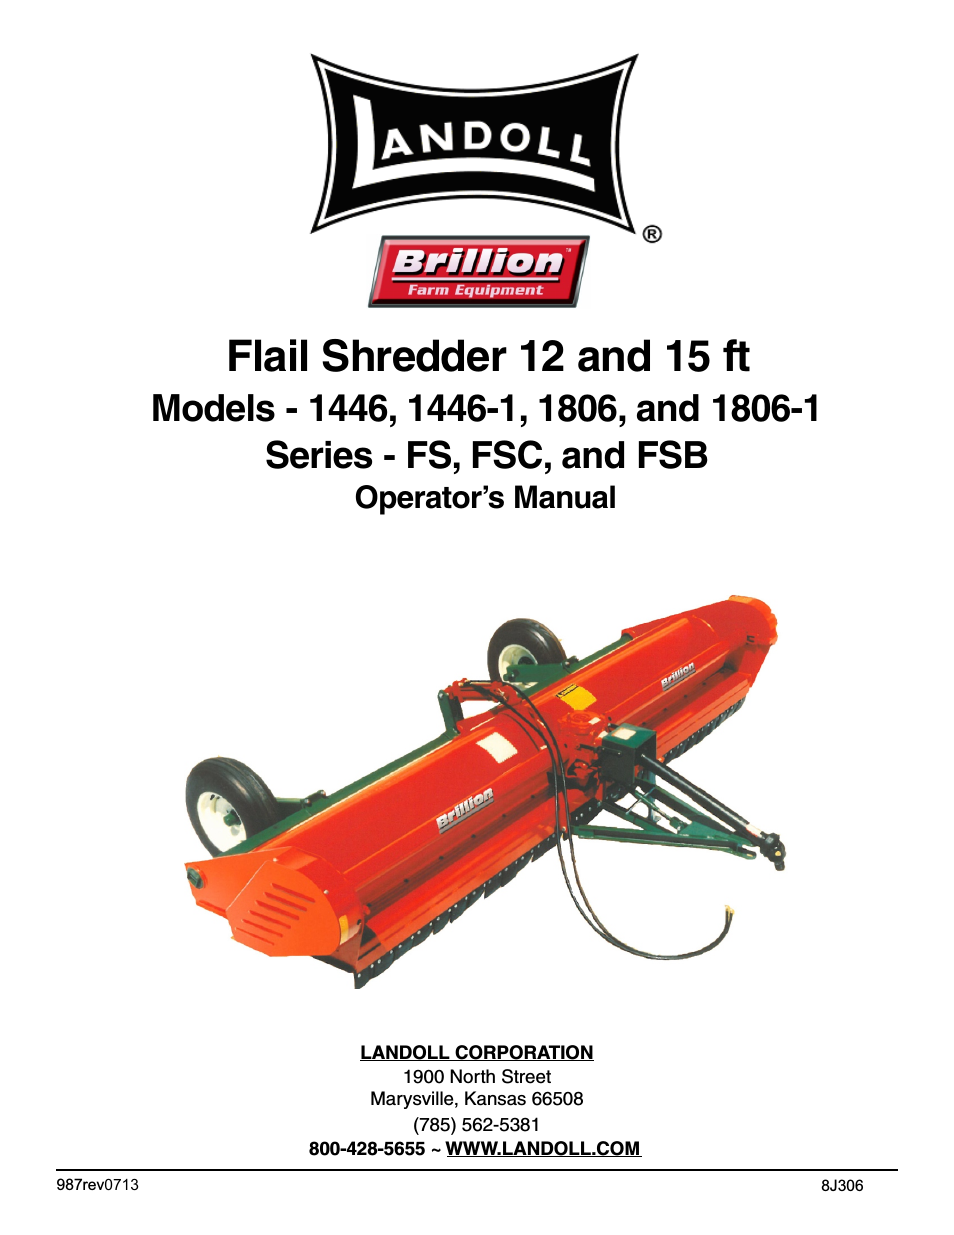 1806/1806-1 FS, FSC, FSB Series Flail Shredder